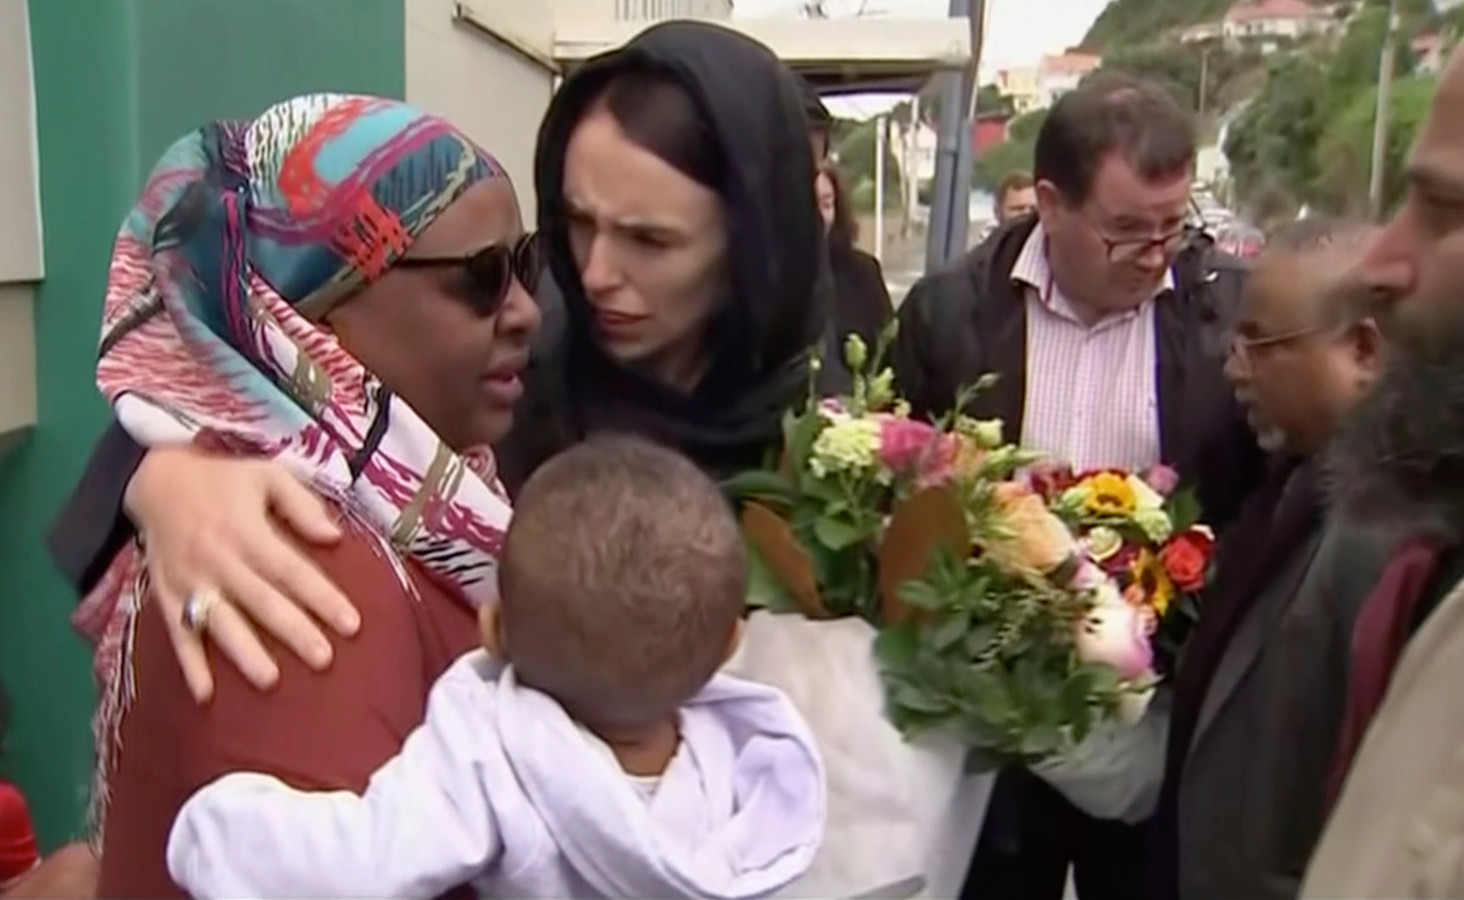 De Nieuw-Zeelandse premier Jacinda Ardern troost een vrouw bij een bezoek aan de Kilbirnie moskee in Wellington, waar bloemen worden neergelegd voor de slachtoffers van de aanslag in Christchurch.